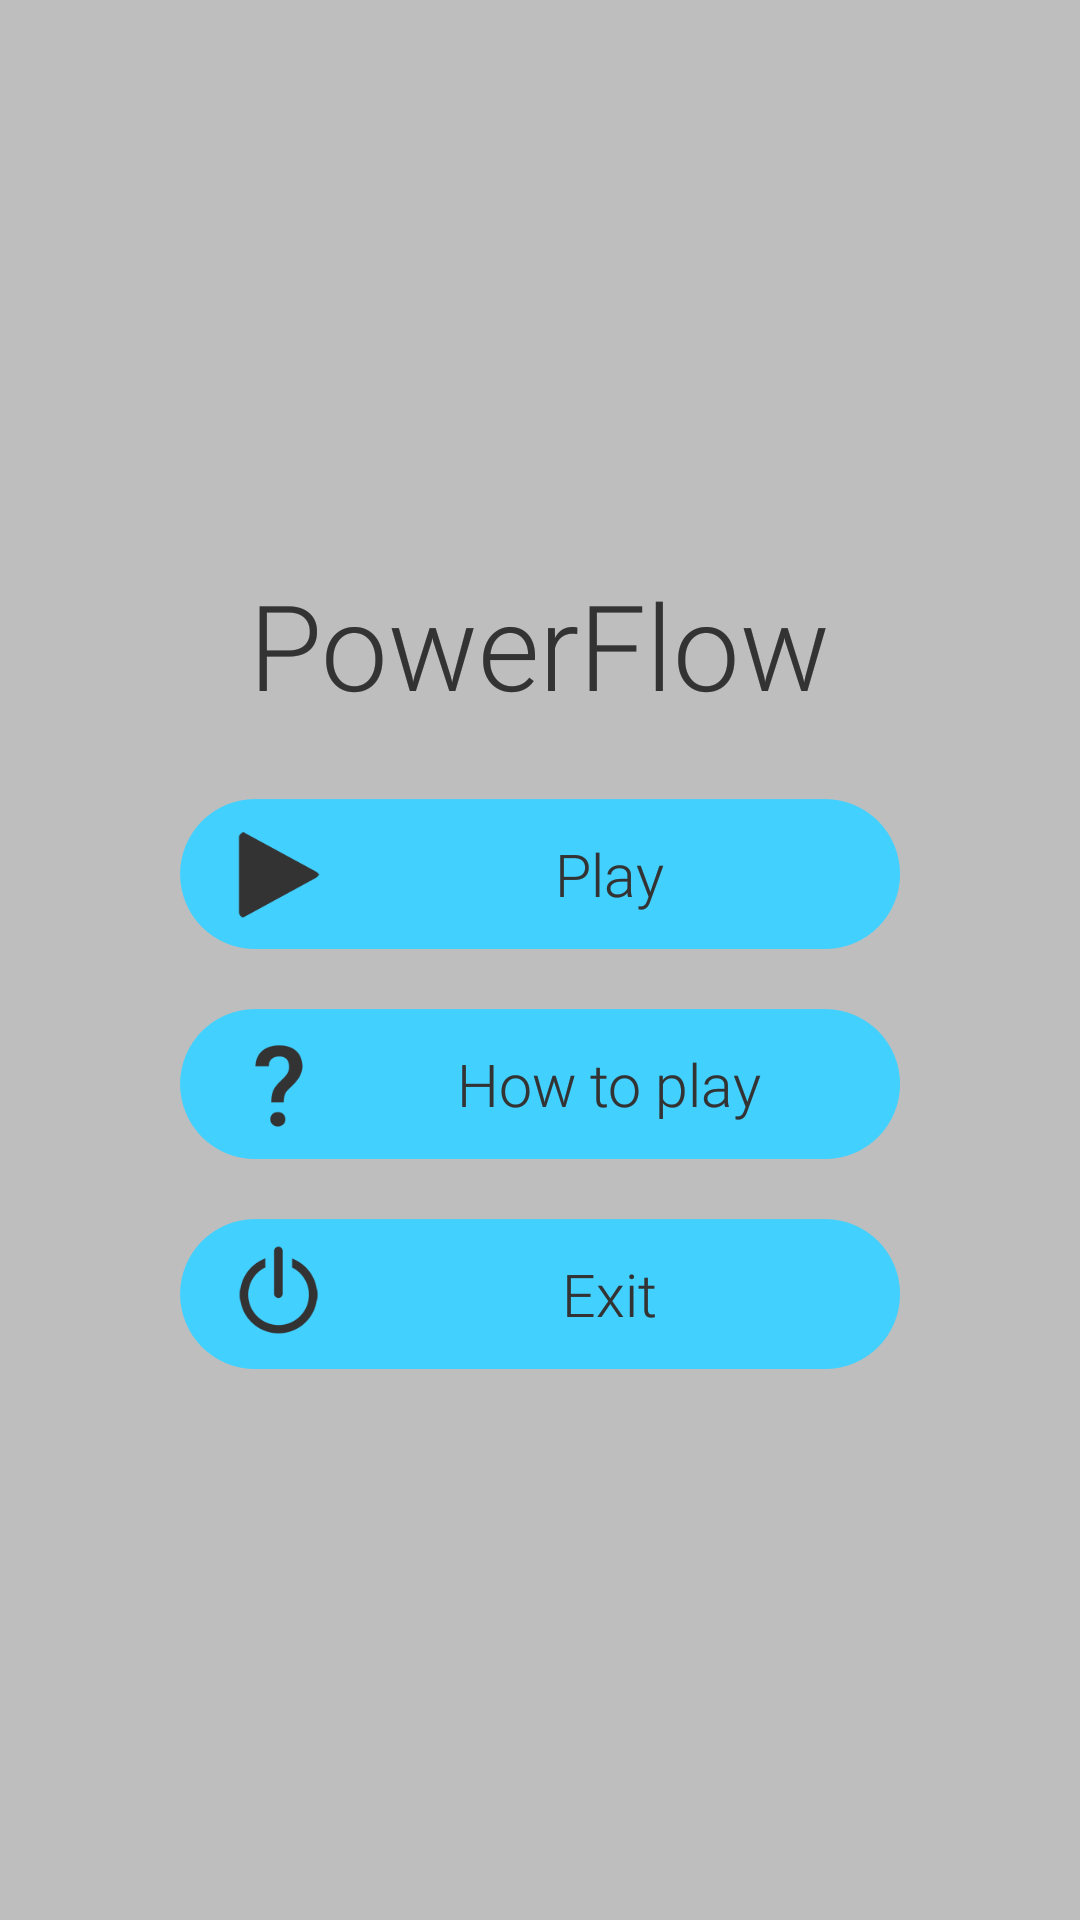 powerflow